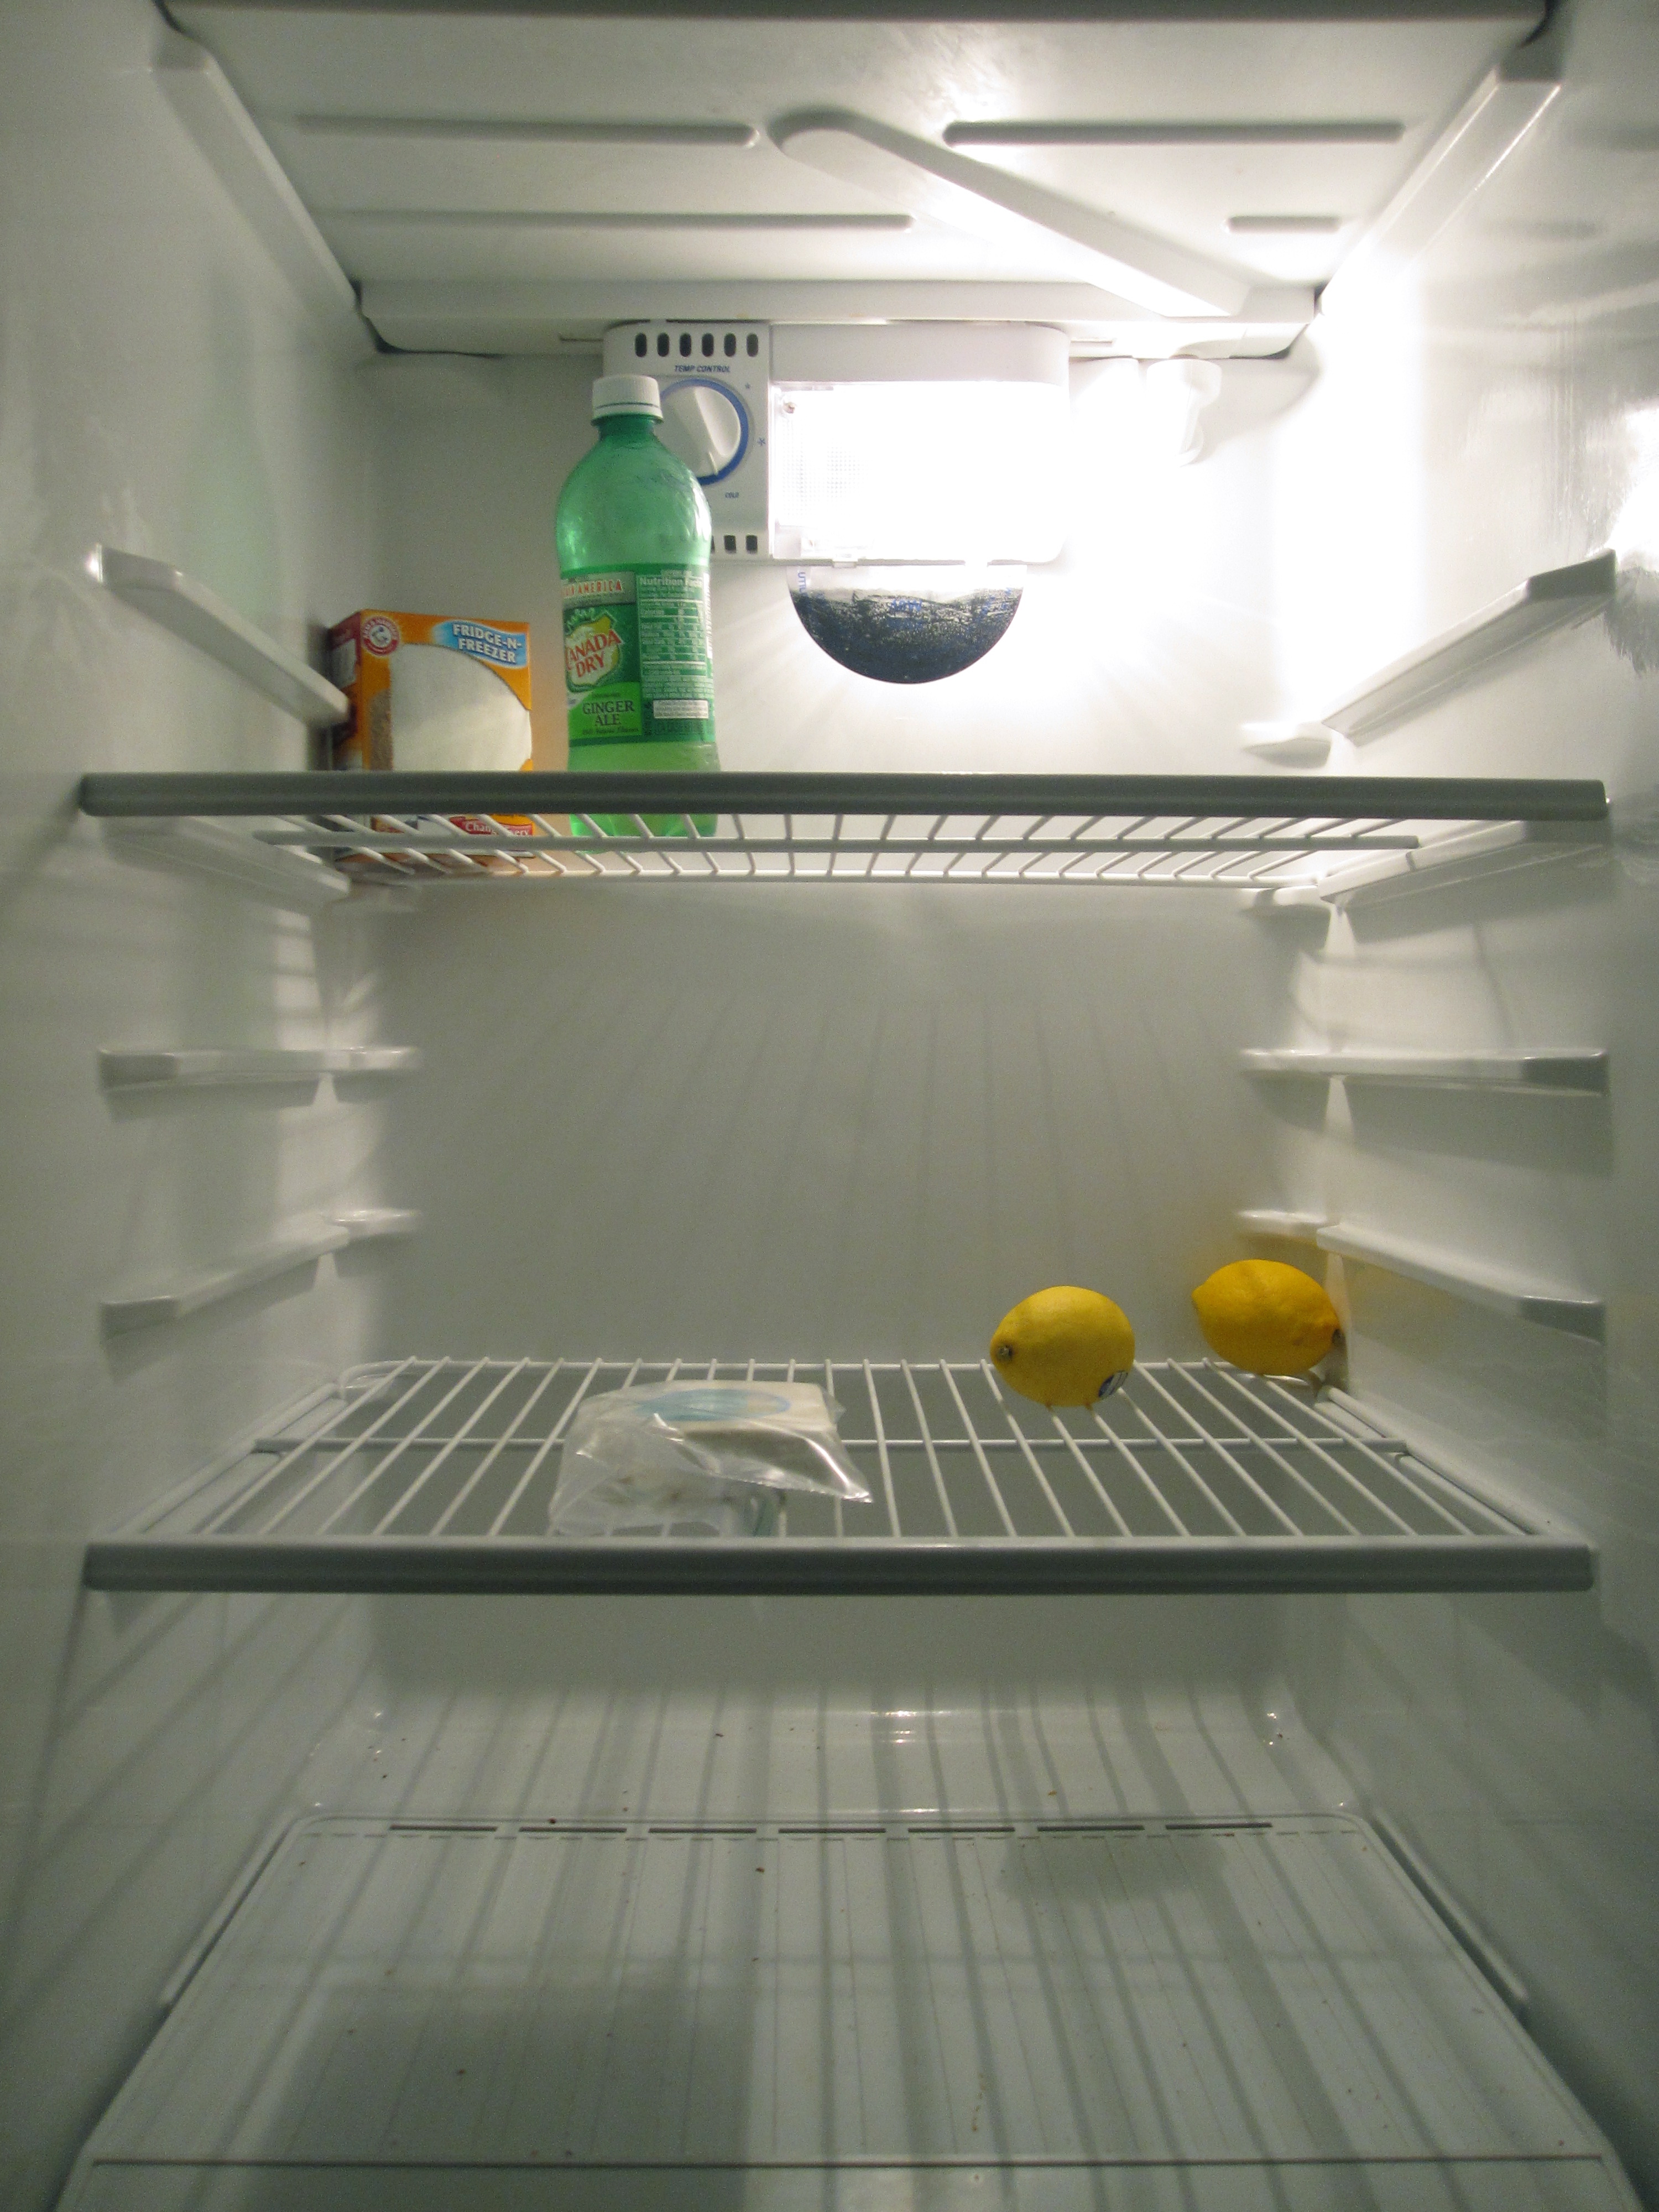 Пустой холодильник